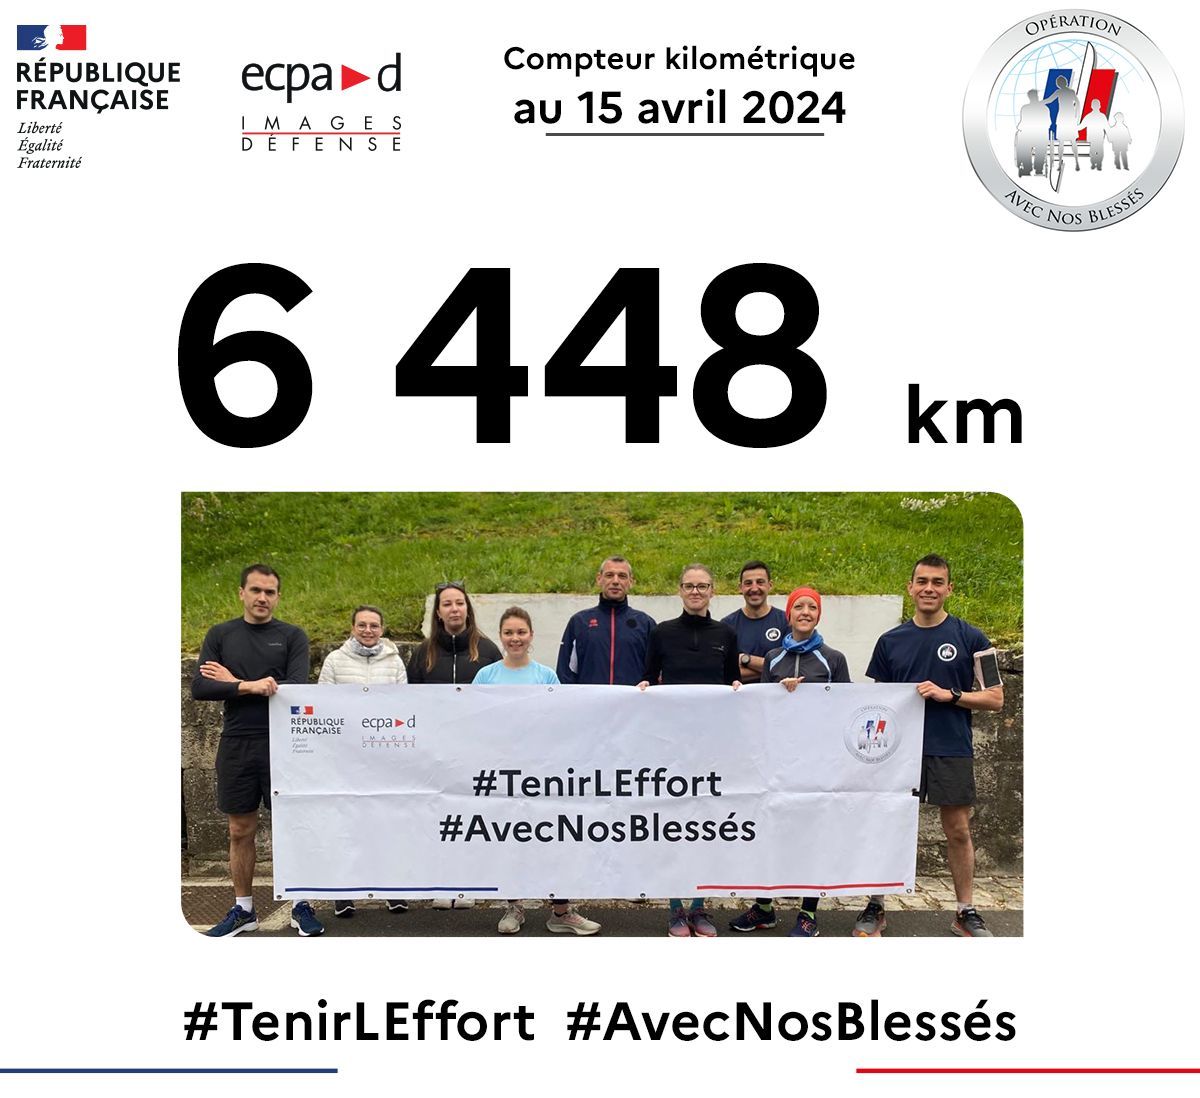 👉Les équipes de l’ECPAD continuent de participer à l’opération #AvecNosBlessés et le compteur monte à 6 448 km !
#TenirLEffort 
#CohésionDéfense 
@armees_gouv @armeedeterre